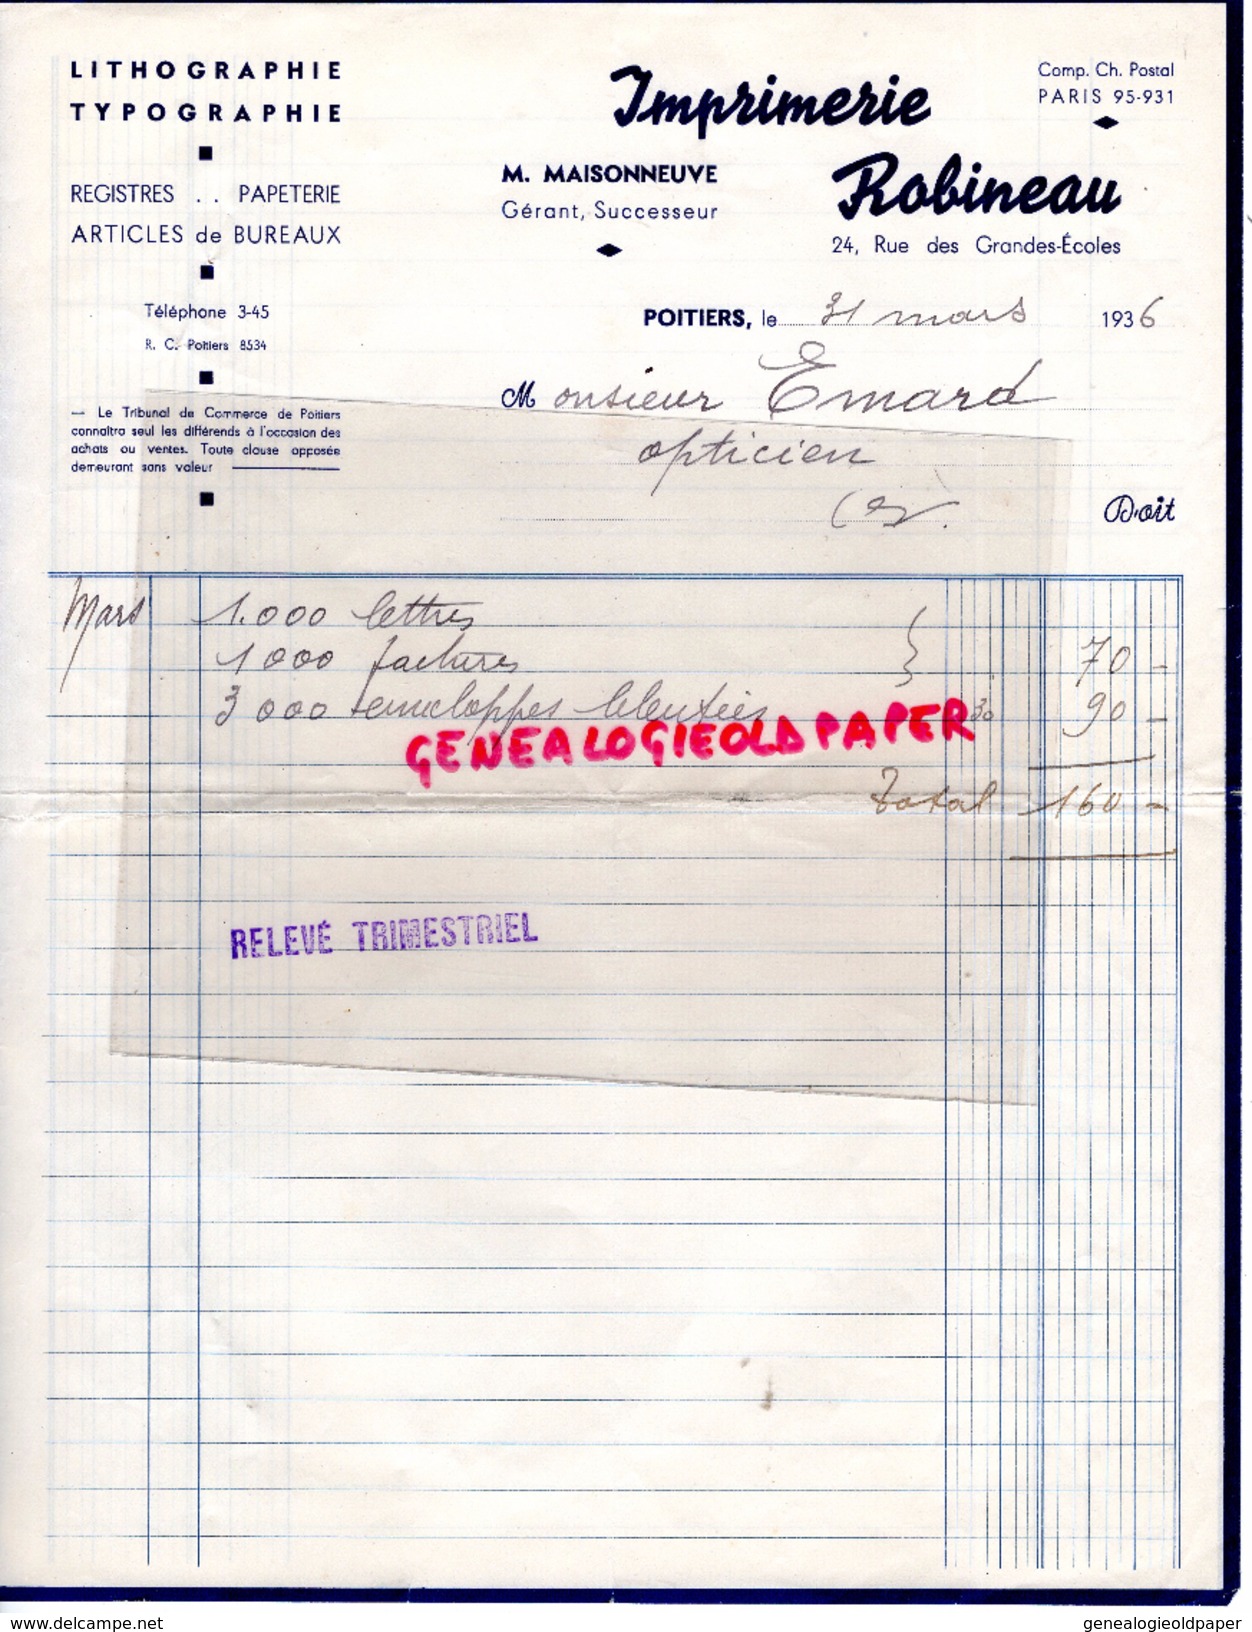 86 - POITIERS - FACTURE IMPRIMERIE ROBINEAU- M. MAISONNEUVE- 24 RUE GRANDES ECOLES- LITHOGRAPHIE TYPOGRAPHIE-1936 - Druck & Papierwaren